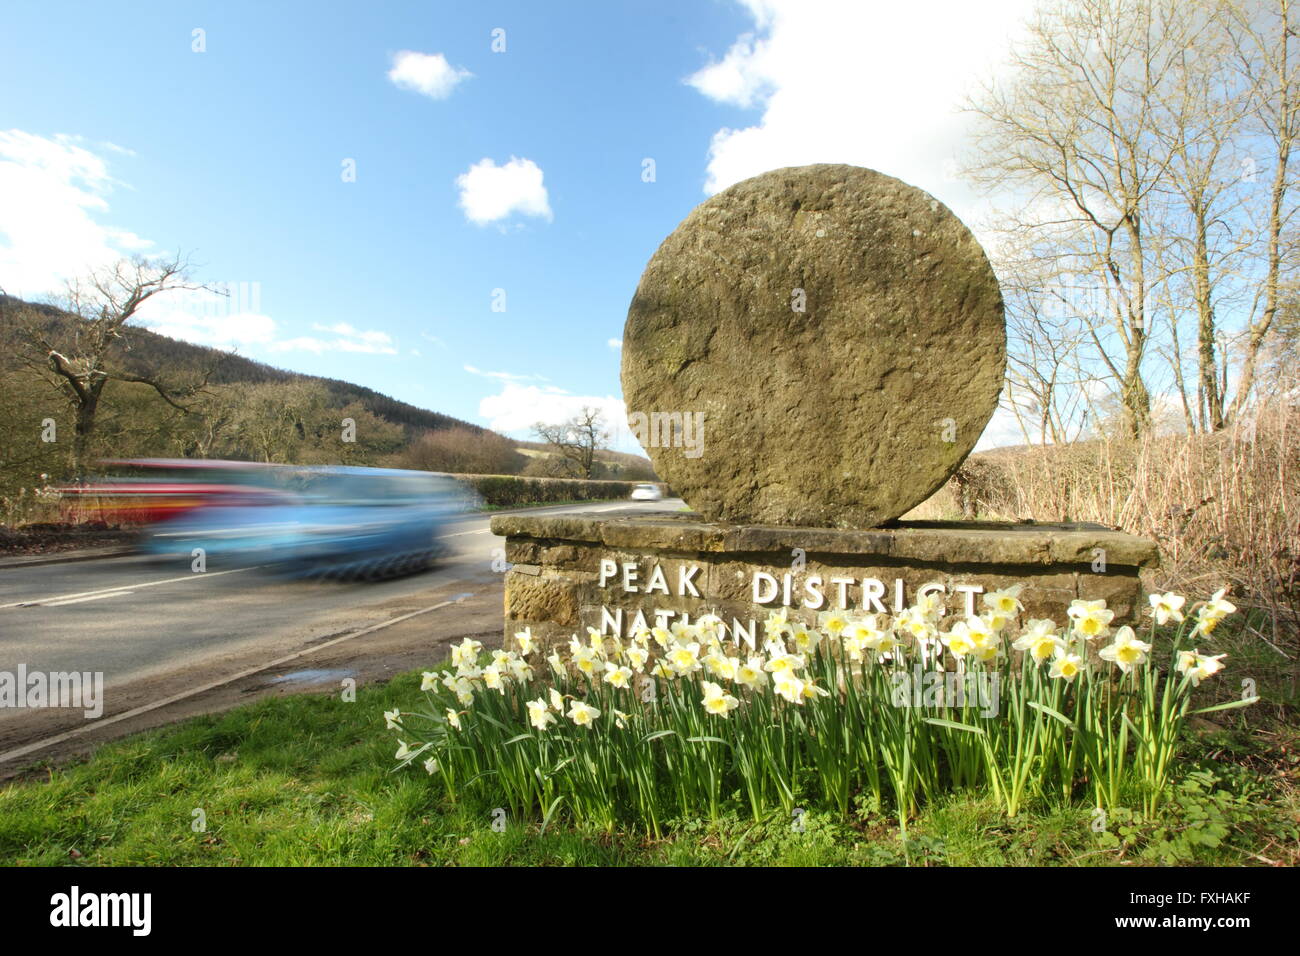 Autos fahren vorbei an einem Mühlstein Grenze Marker in der Peak District National Park, Derbyshire England UK - Frühling Stockfoto